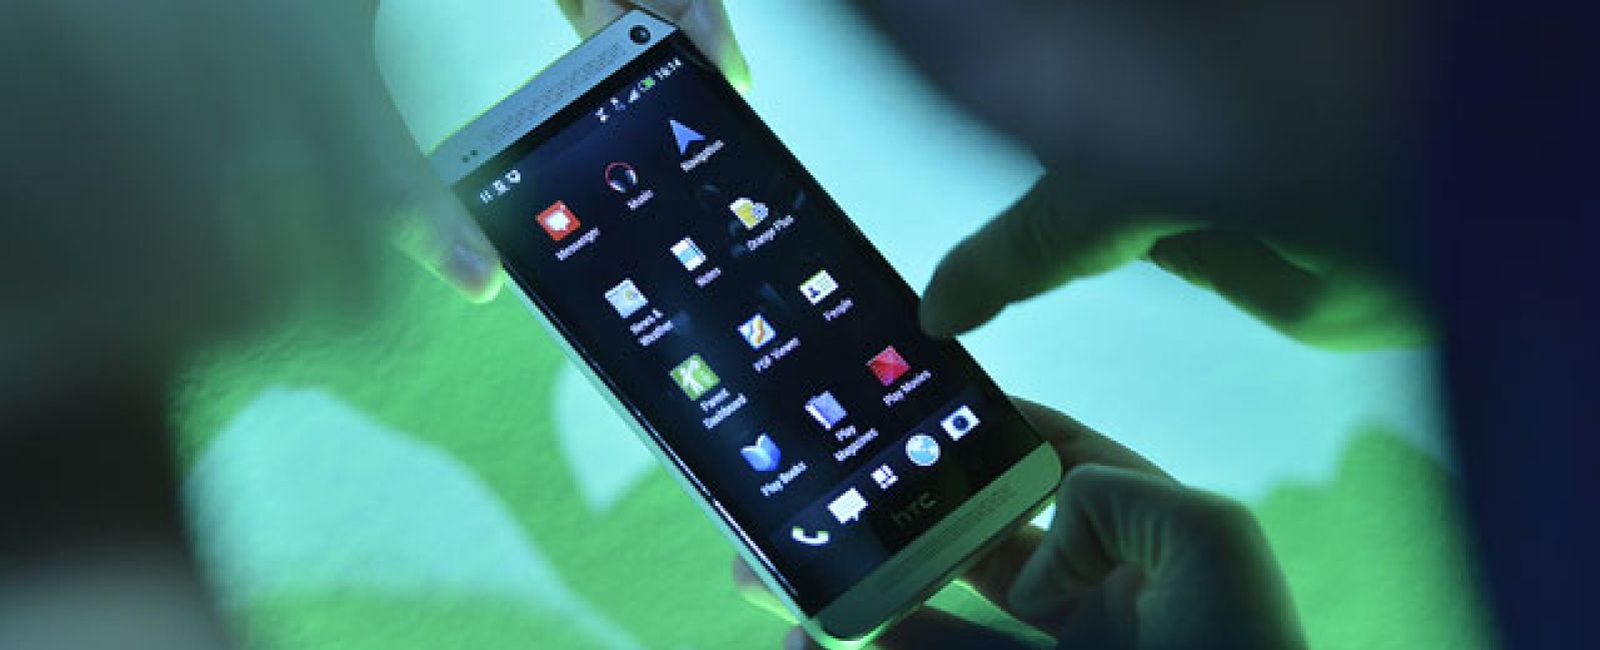 Foto: HTC One: uno de los mejores 'smartphones' del mercado... que no podrá reparar